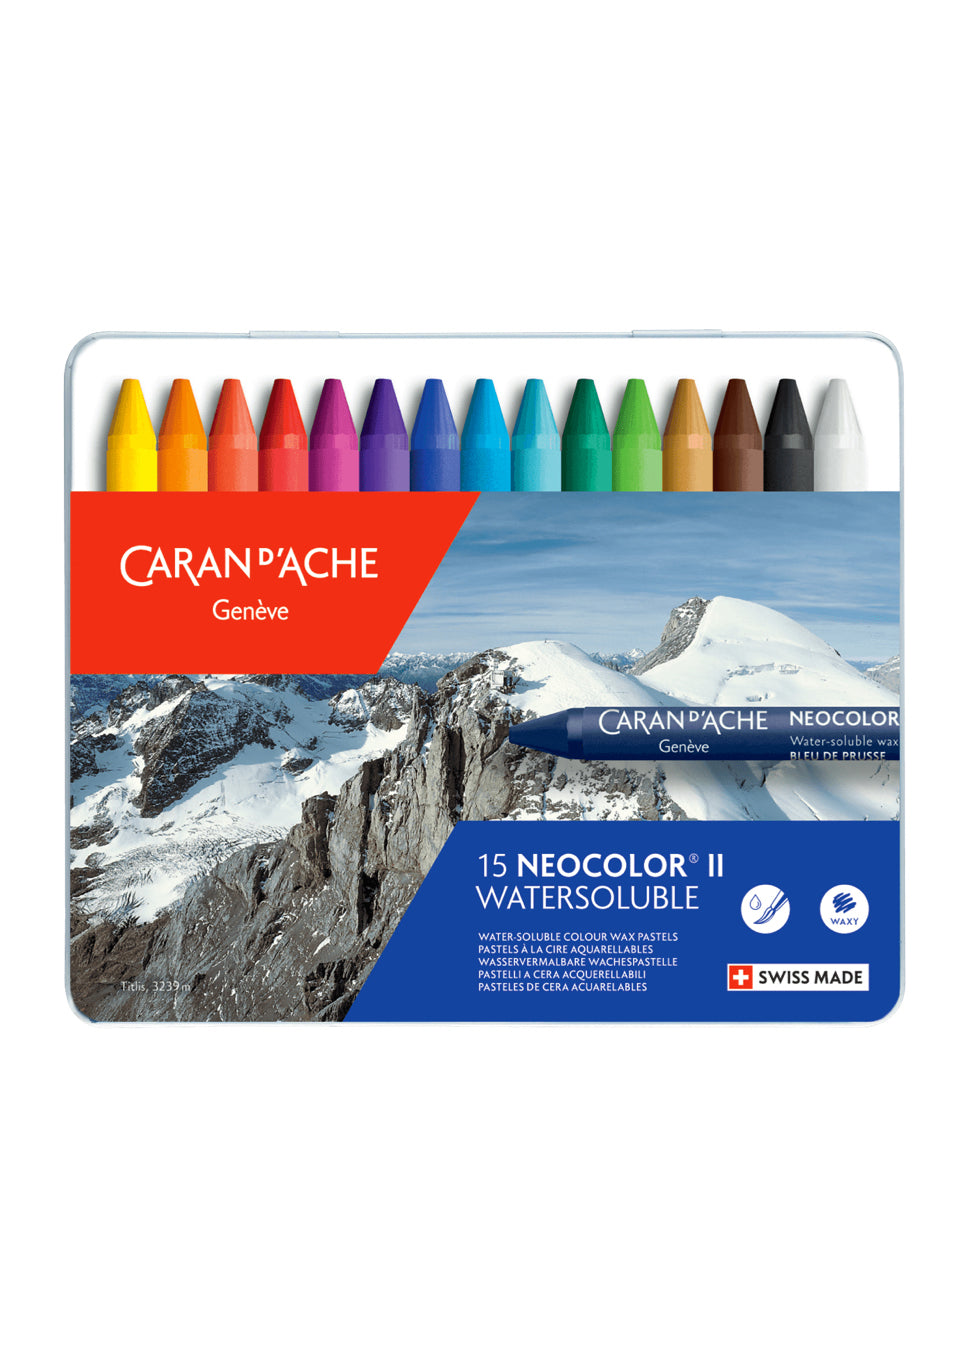 Caran d'Ache Neocolor II Aquarelle Artists' Pastels and Sets